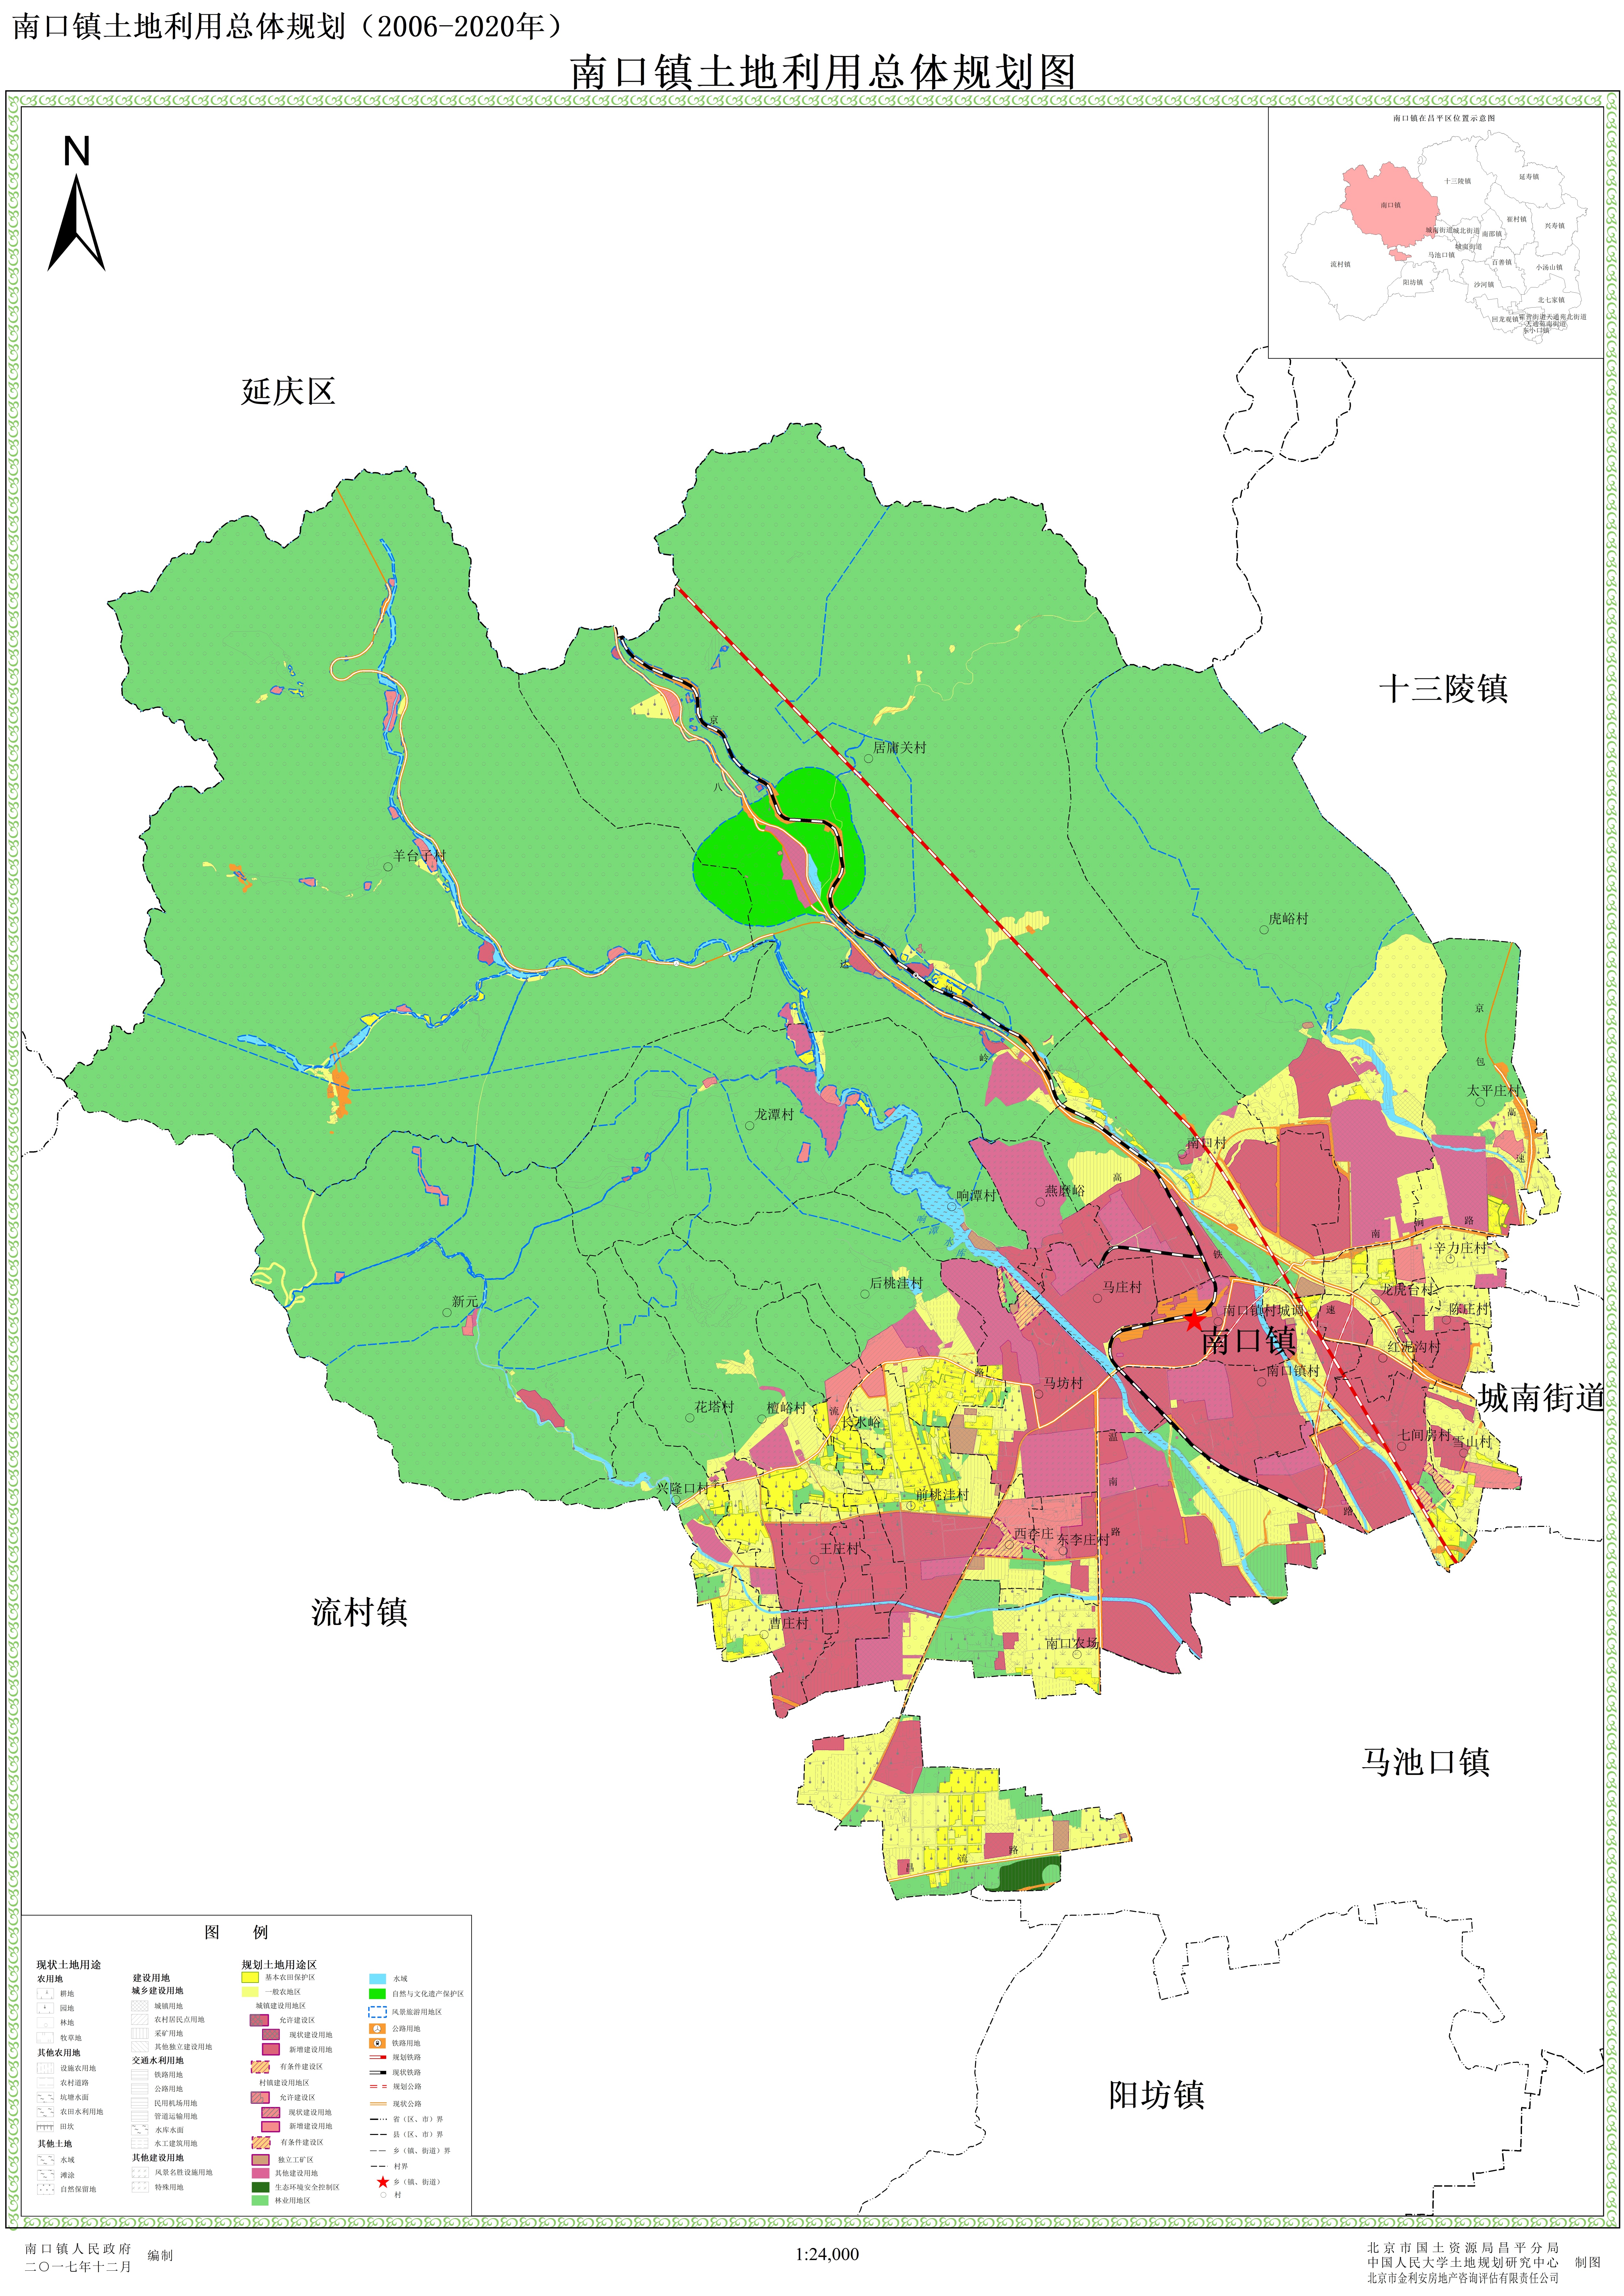 南口镇土地利用总体规划(2006-2020年)调整方案成果